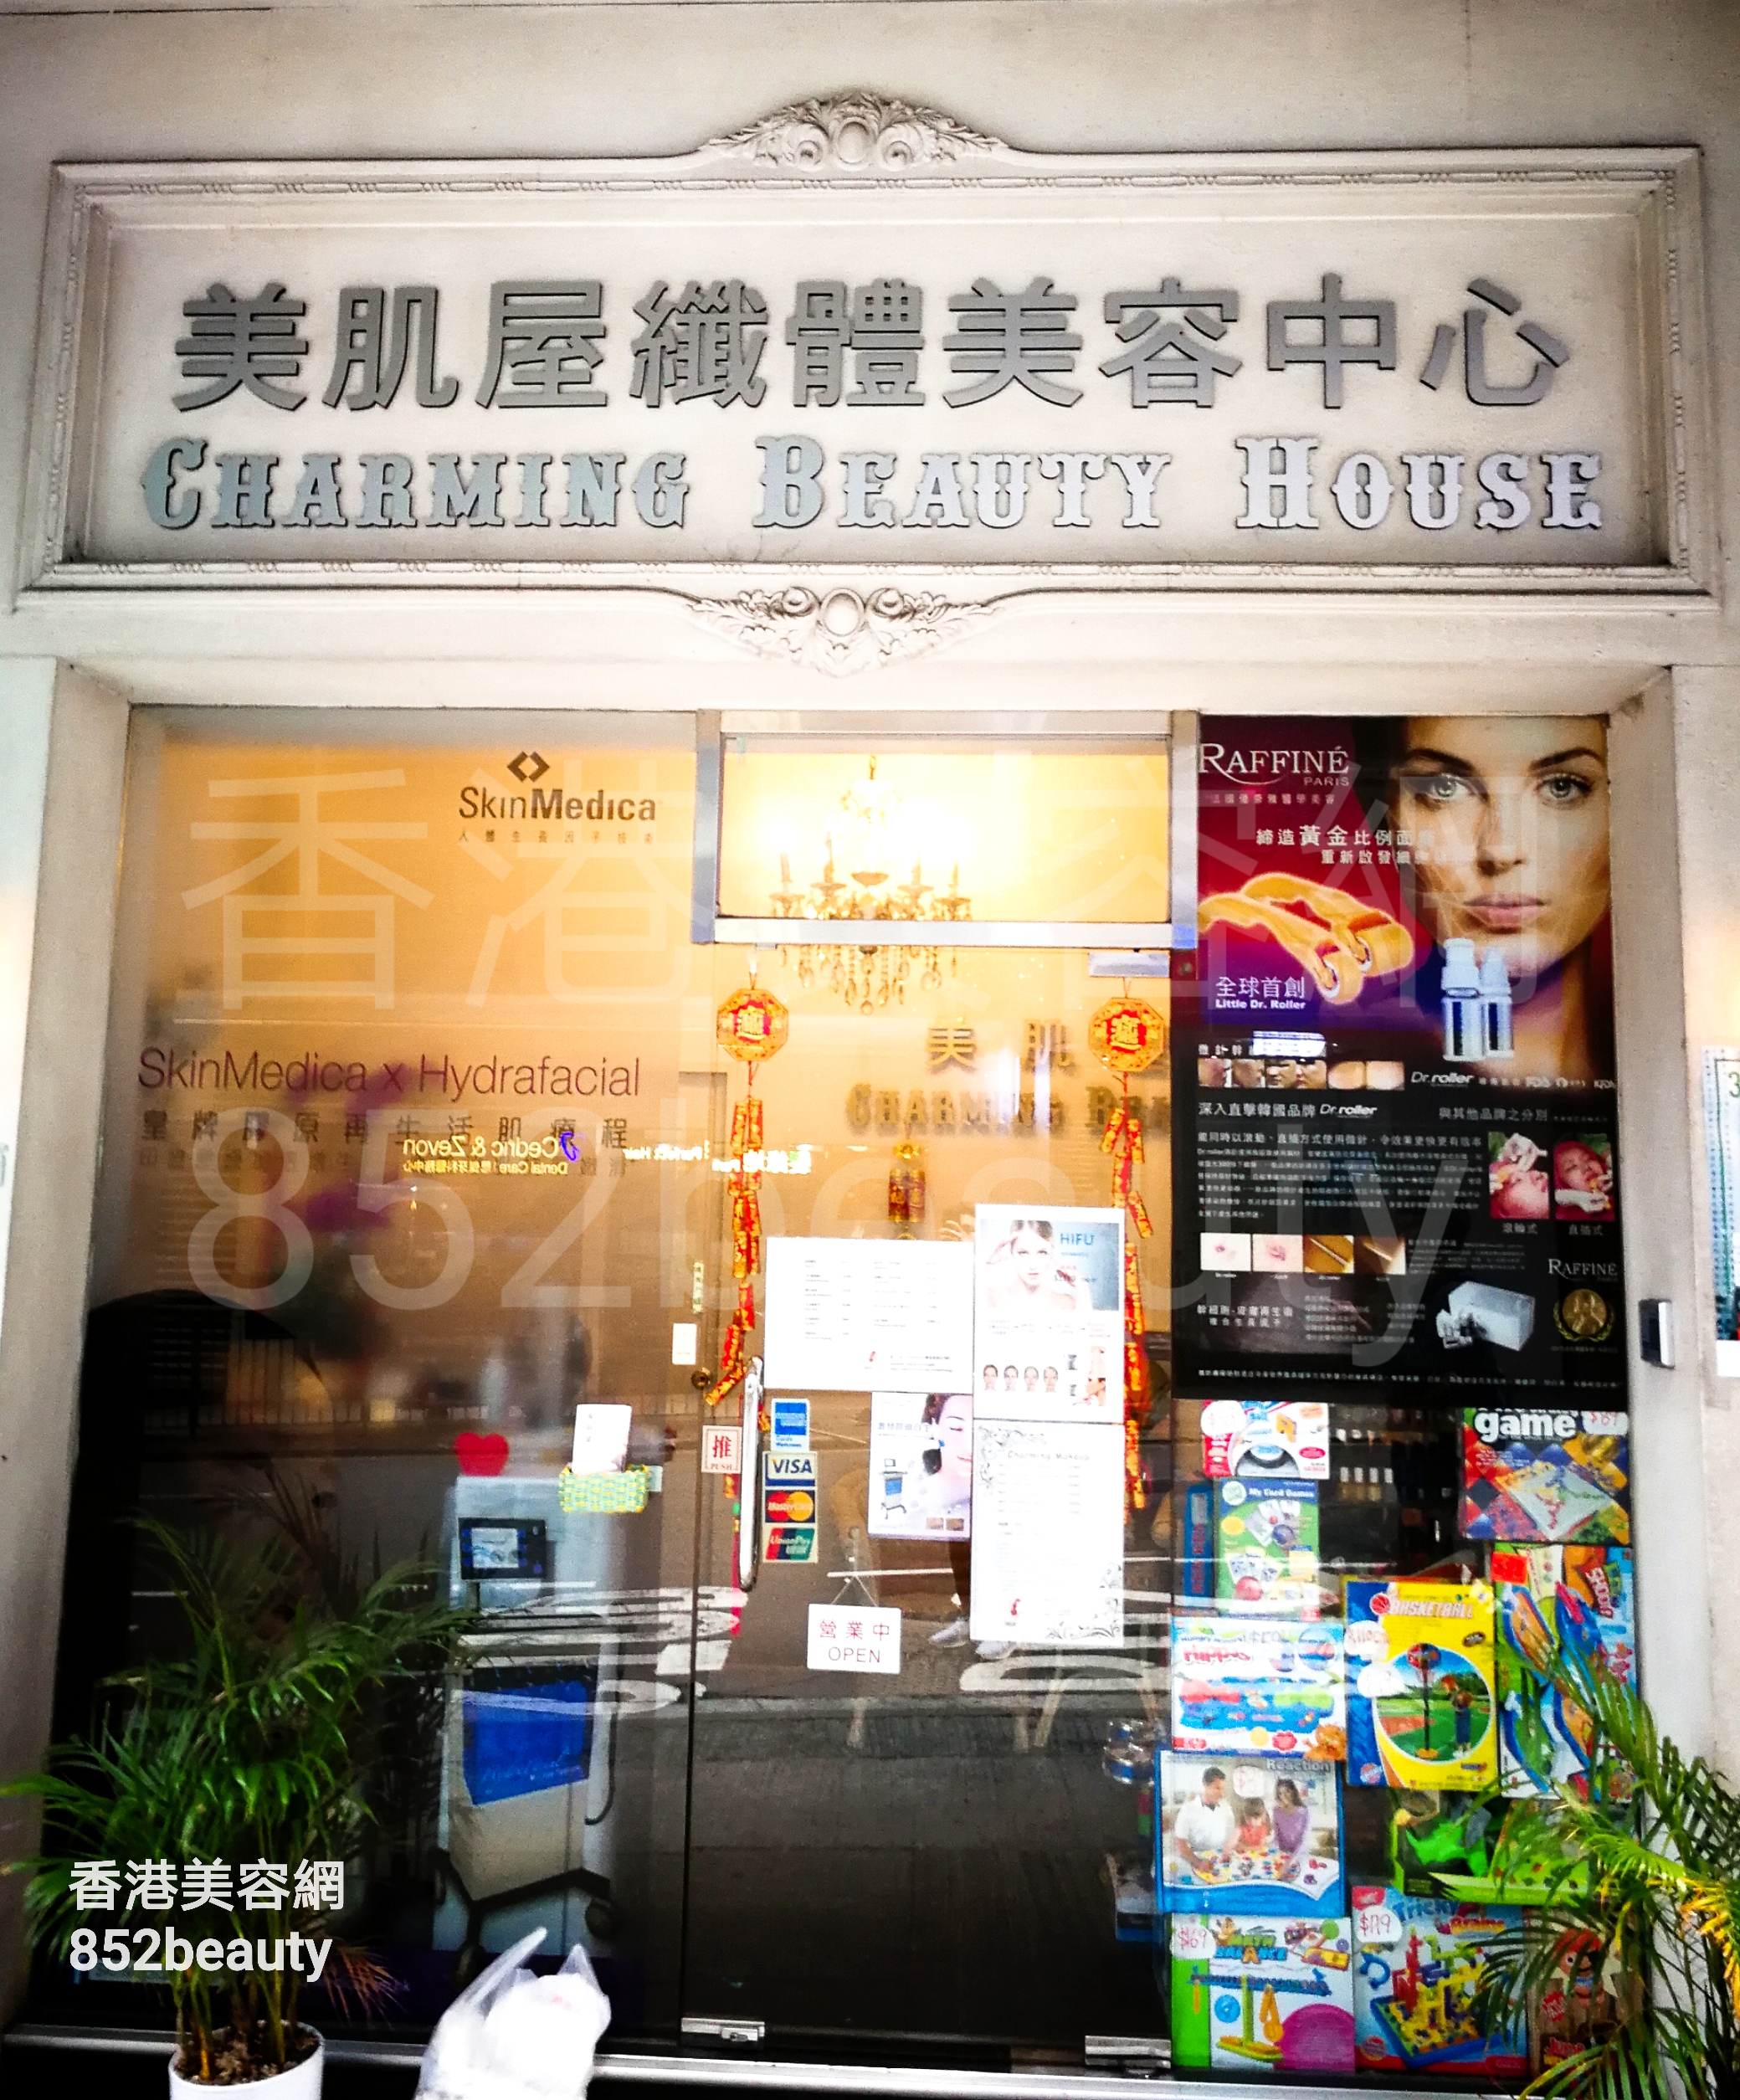 香港美容網 Hong Kong Beauty Salon 美容院 / 美容師: 美肌屋織體美容中心